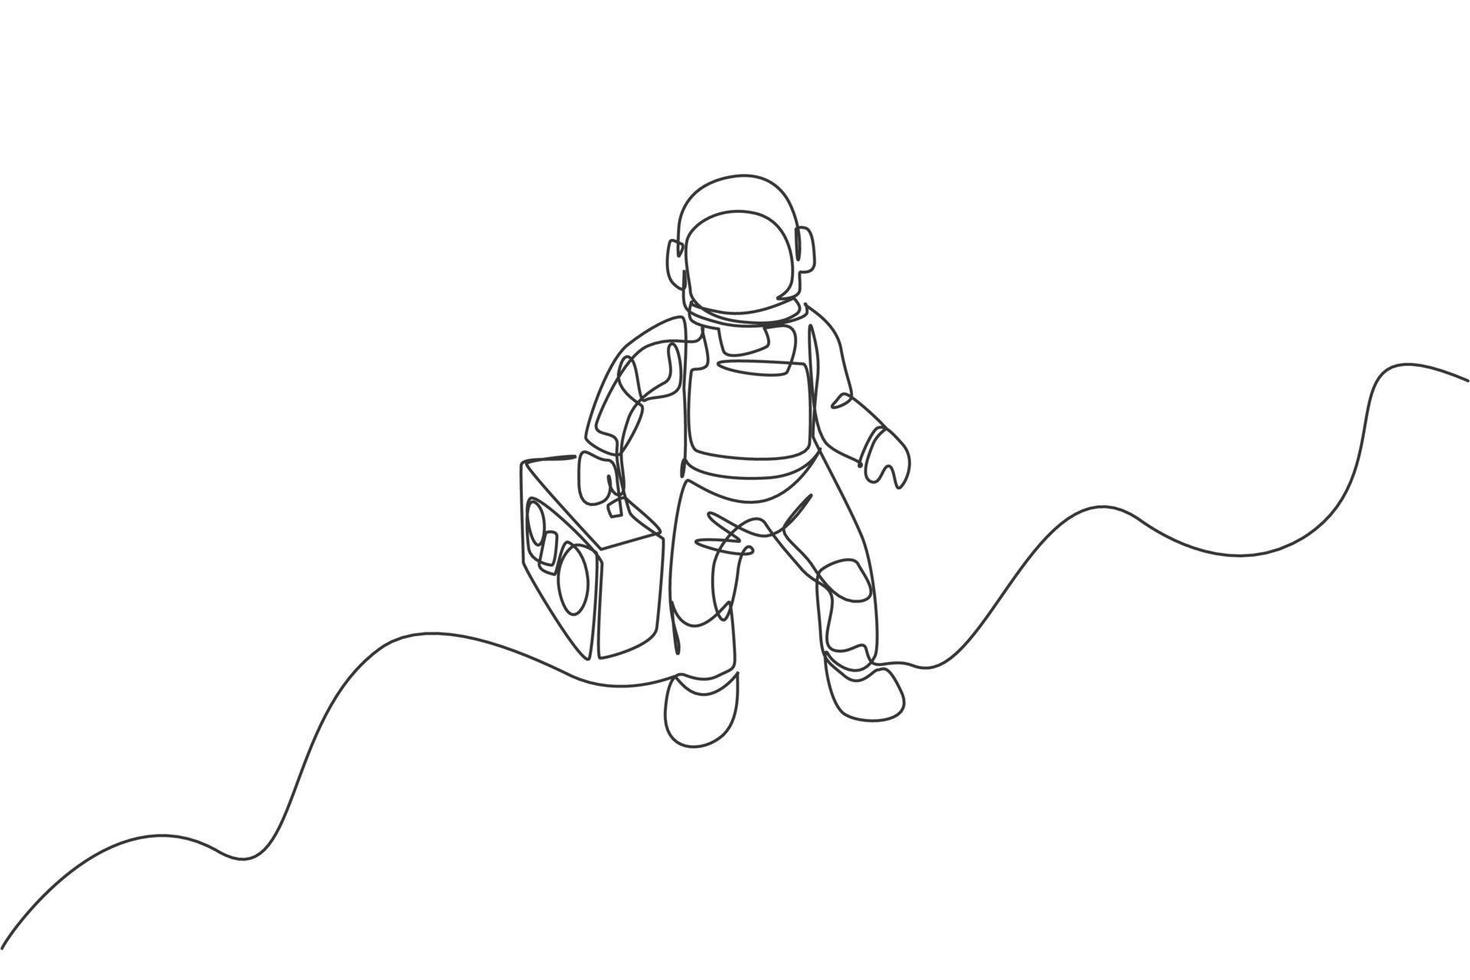 un dibujo de una sola línea de astronauta volando y trayendo radio retro en la ilustración vectorial gráfica del espacio profundo. cartel de concierto de música con concepto de astronauta espacial. diseño moderno de dibujo de línea continua vector